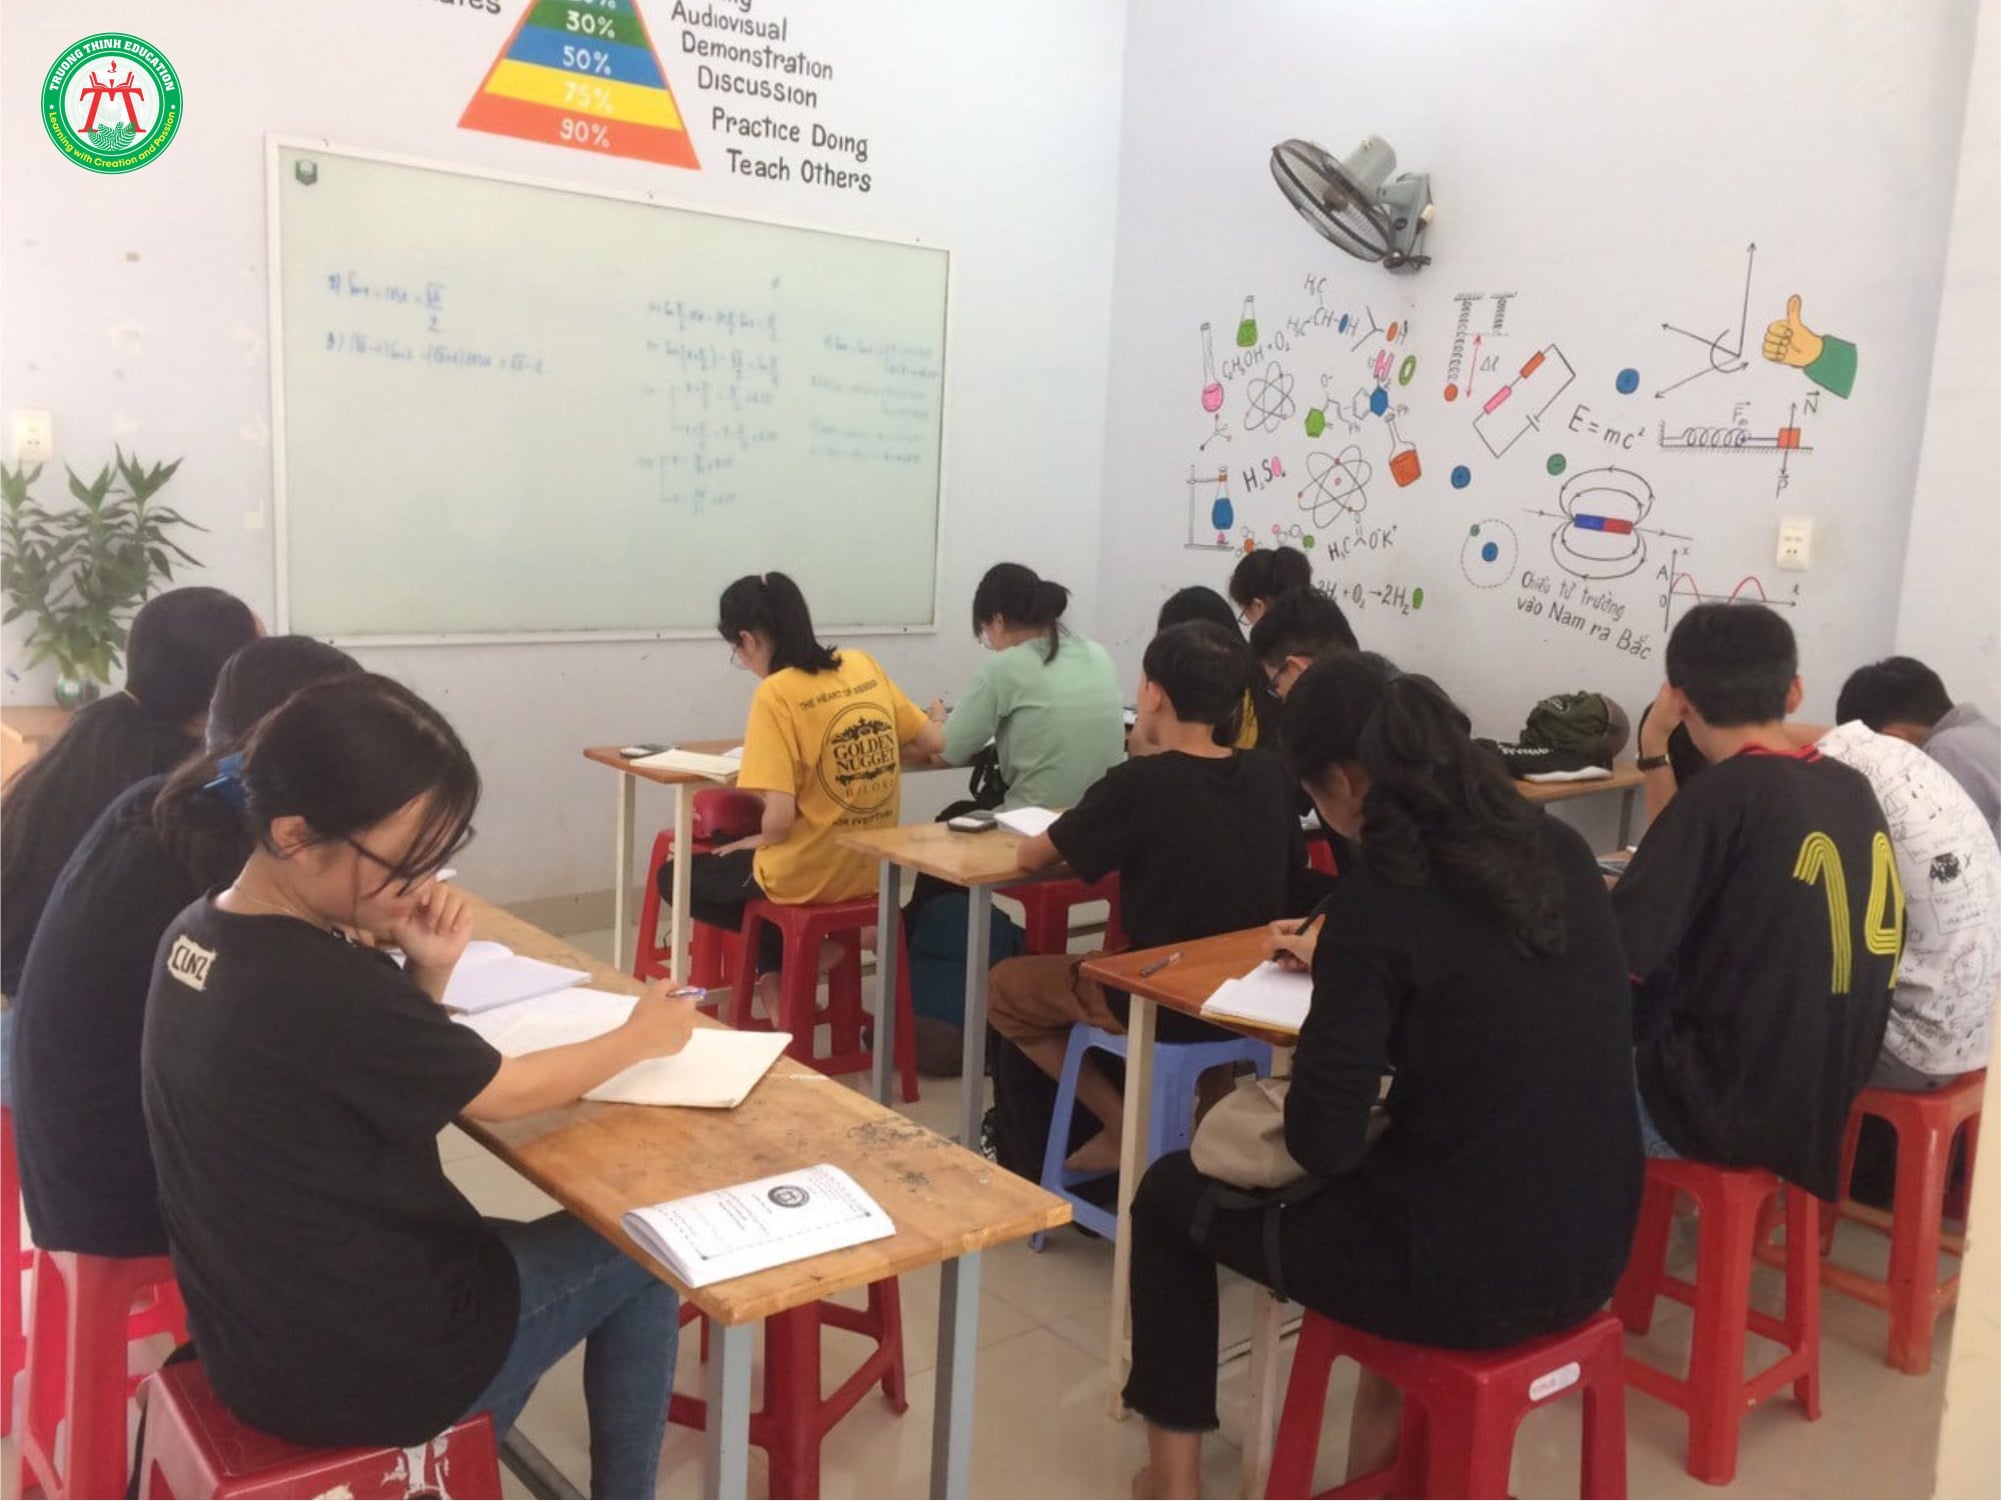 Trung tâm Trường Thịnh - Truong Thinh Education ảnh 2